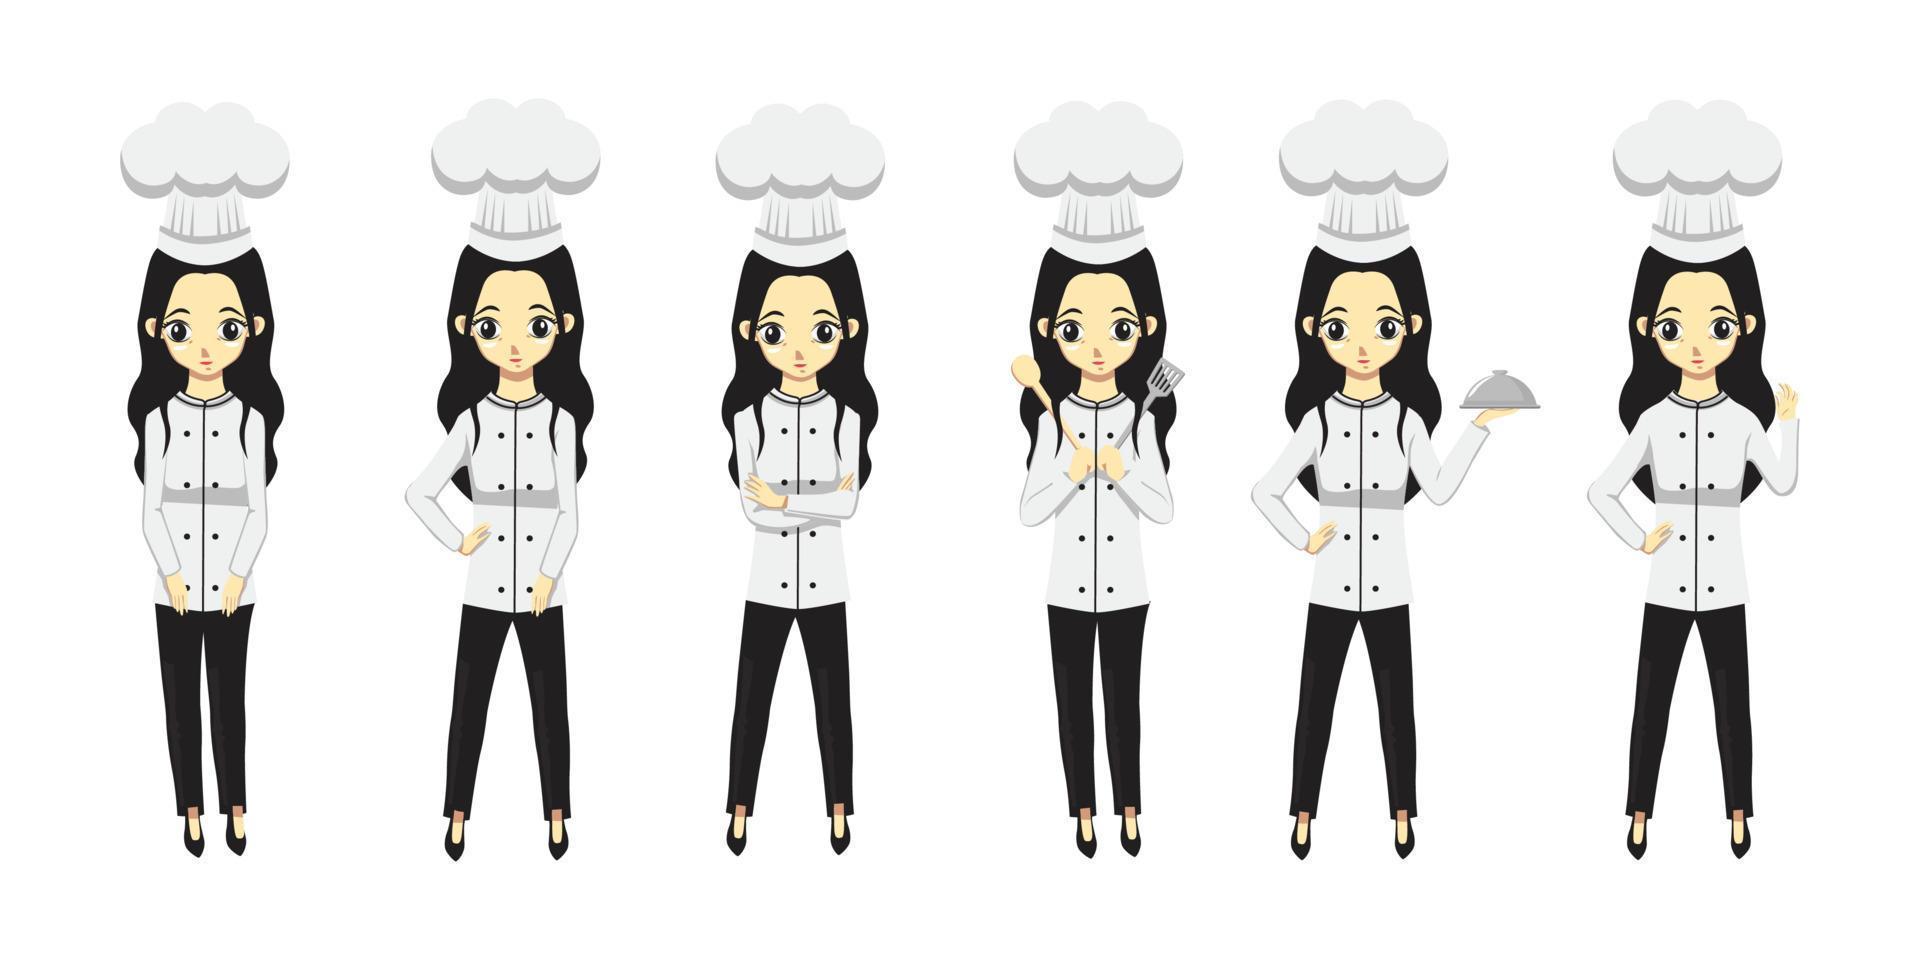 vrouw chef-kok vlakke stijl vector illustratie ontwerp